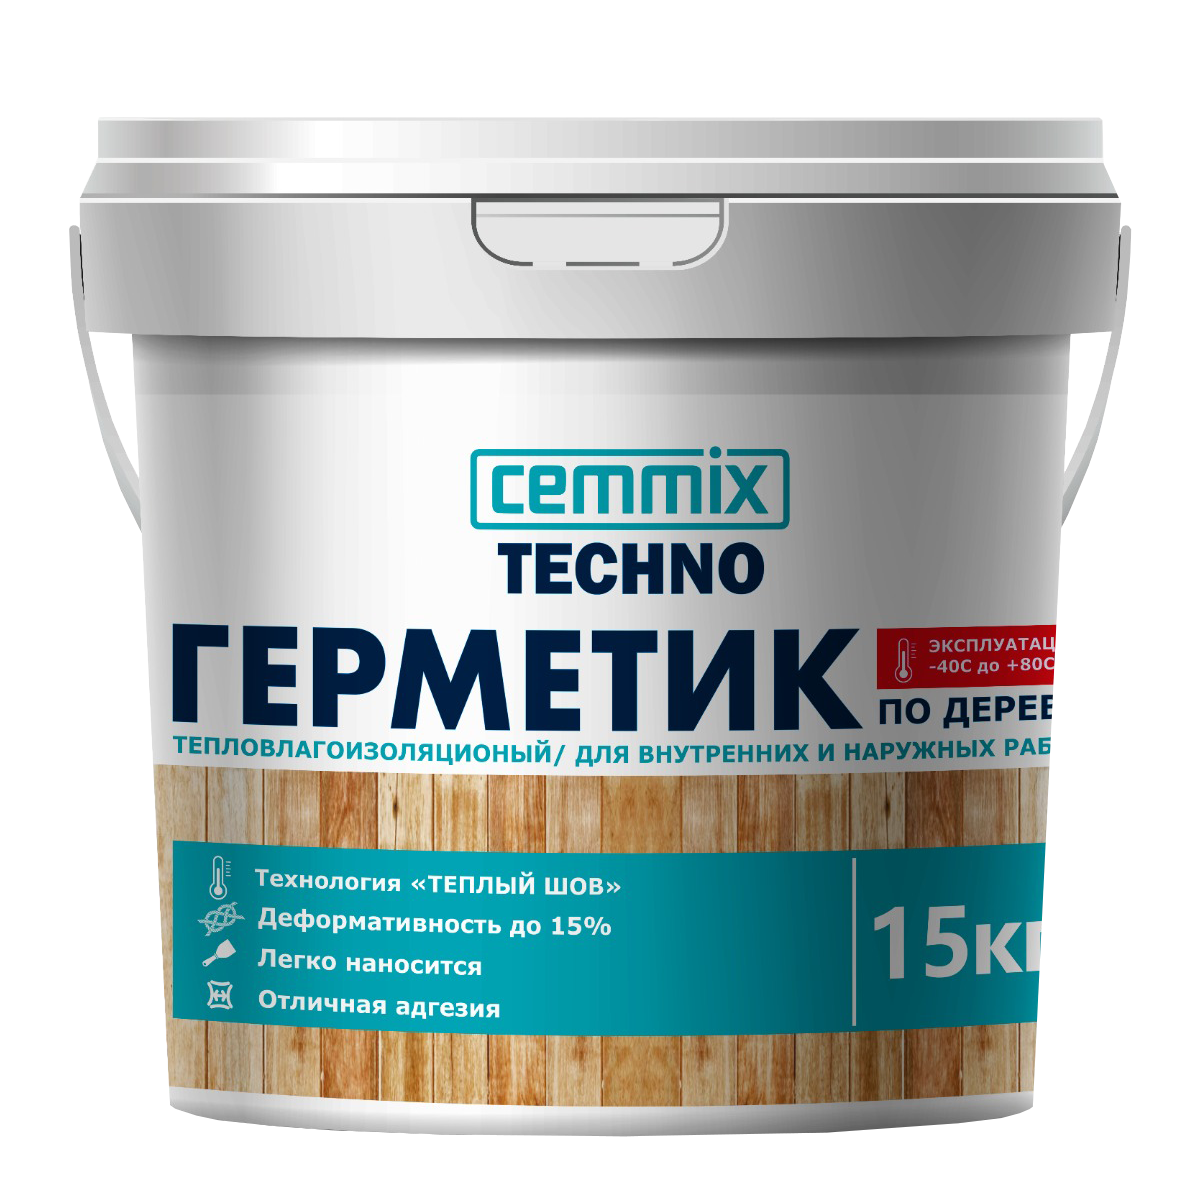 90602623 Герметик для Теплых швов акрил для деревянных поверхностей мед ведро 15 кг STLM-0301905 CEMMIX